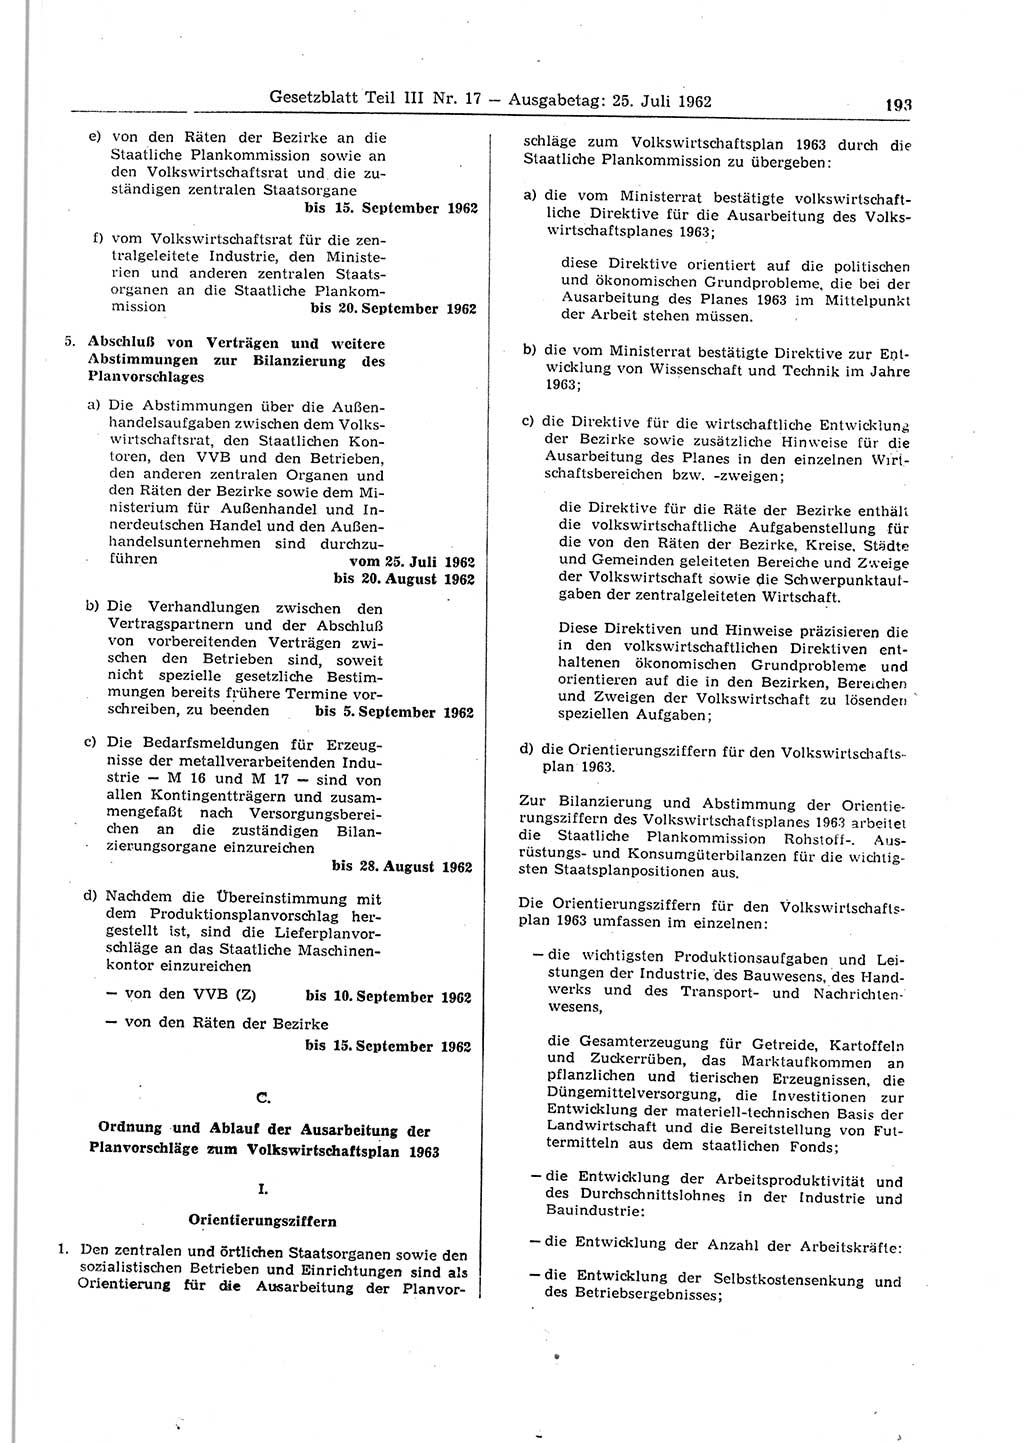 Gesetzblatt (GBl.) der Deutschen Demokratischen Republik (DDR) Teil ⅠⅠⅠ 1962, Seite 193 (GBl. DDR ⅠⅠⅠ 1962, S. 193)